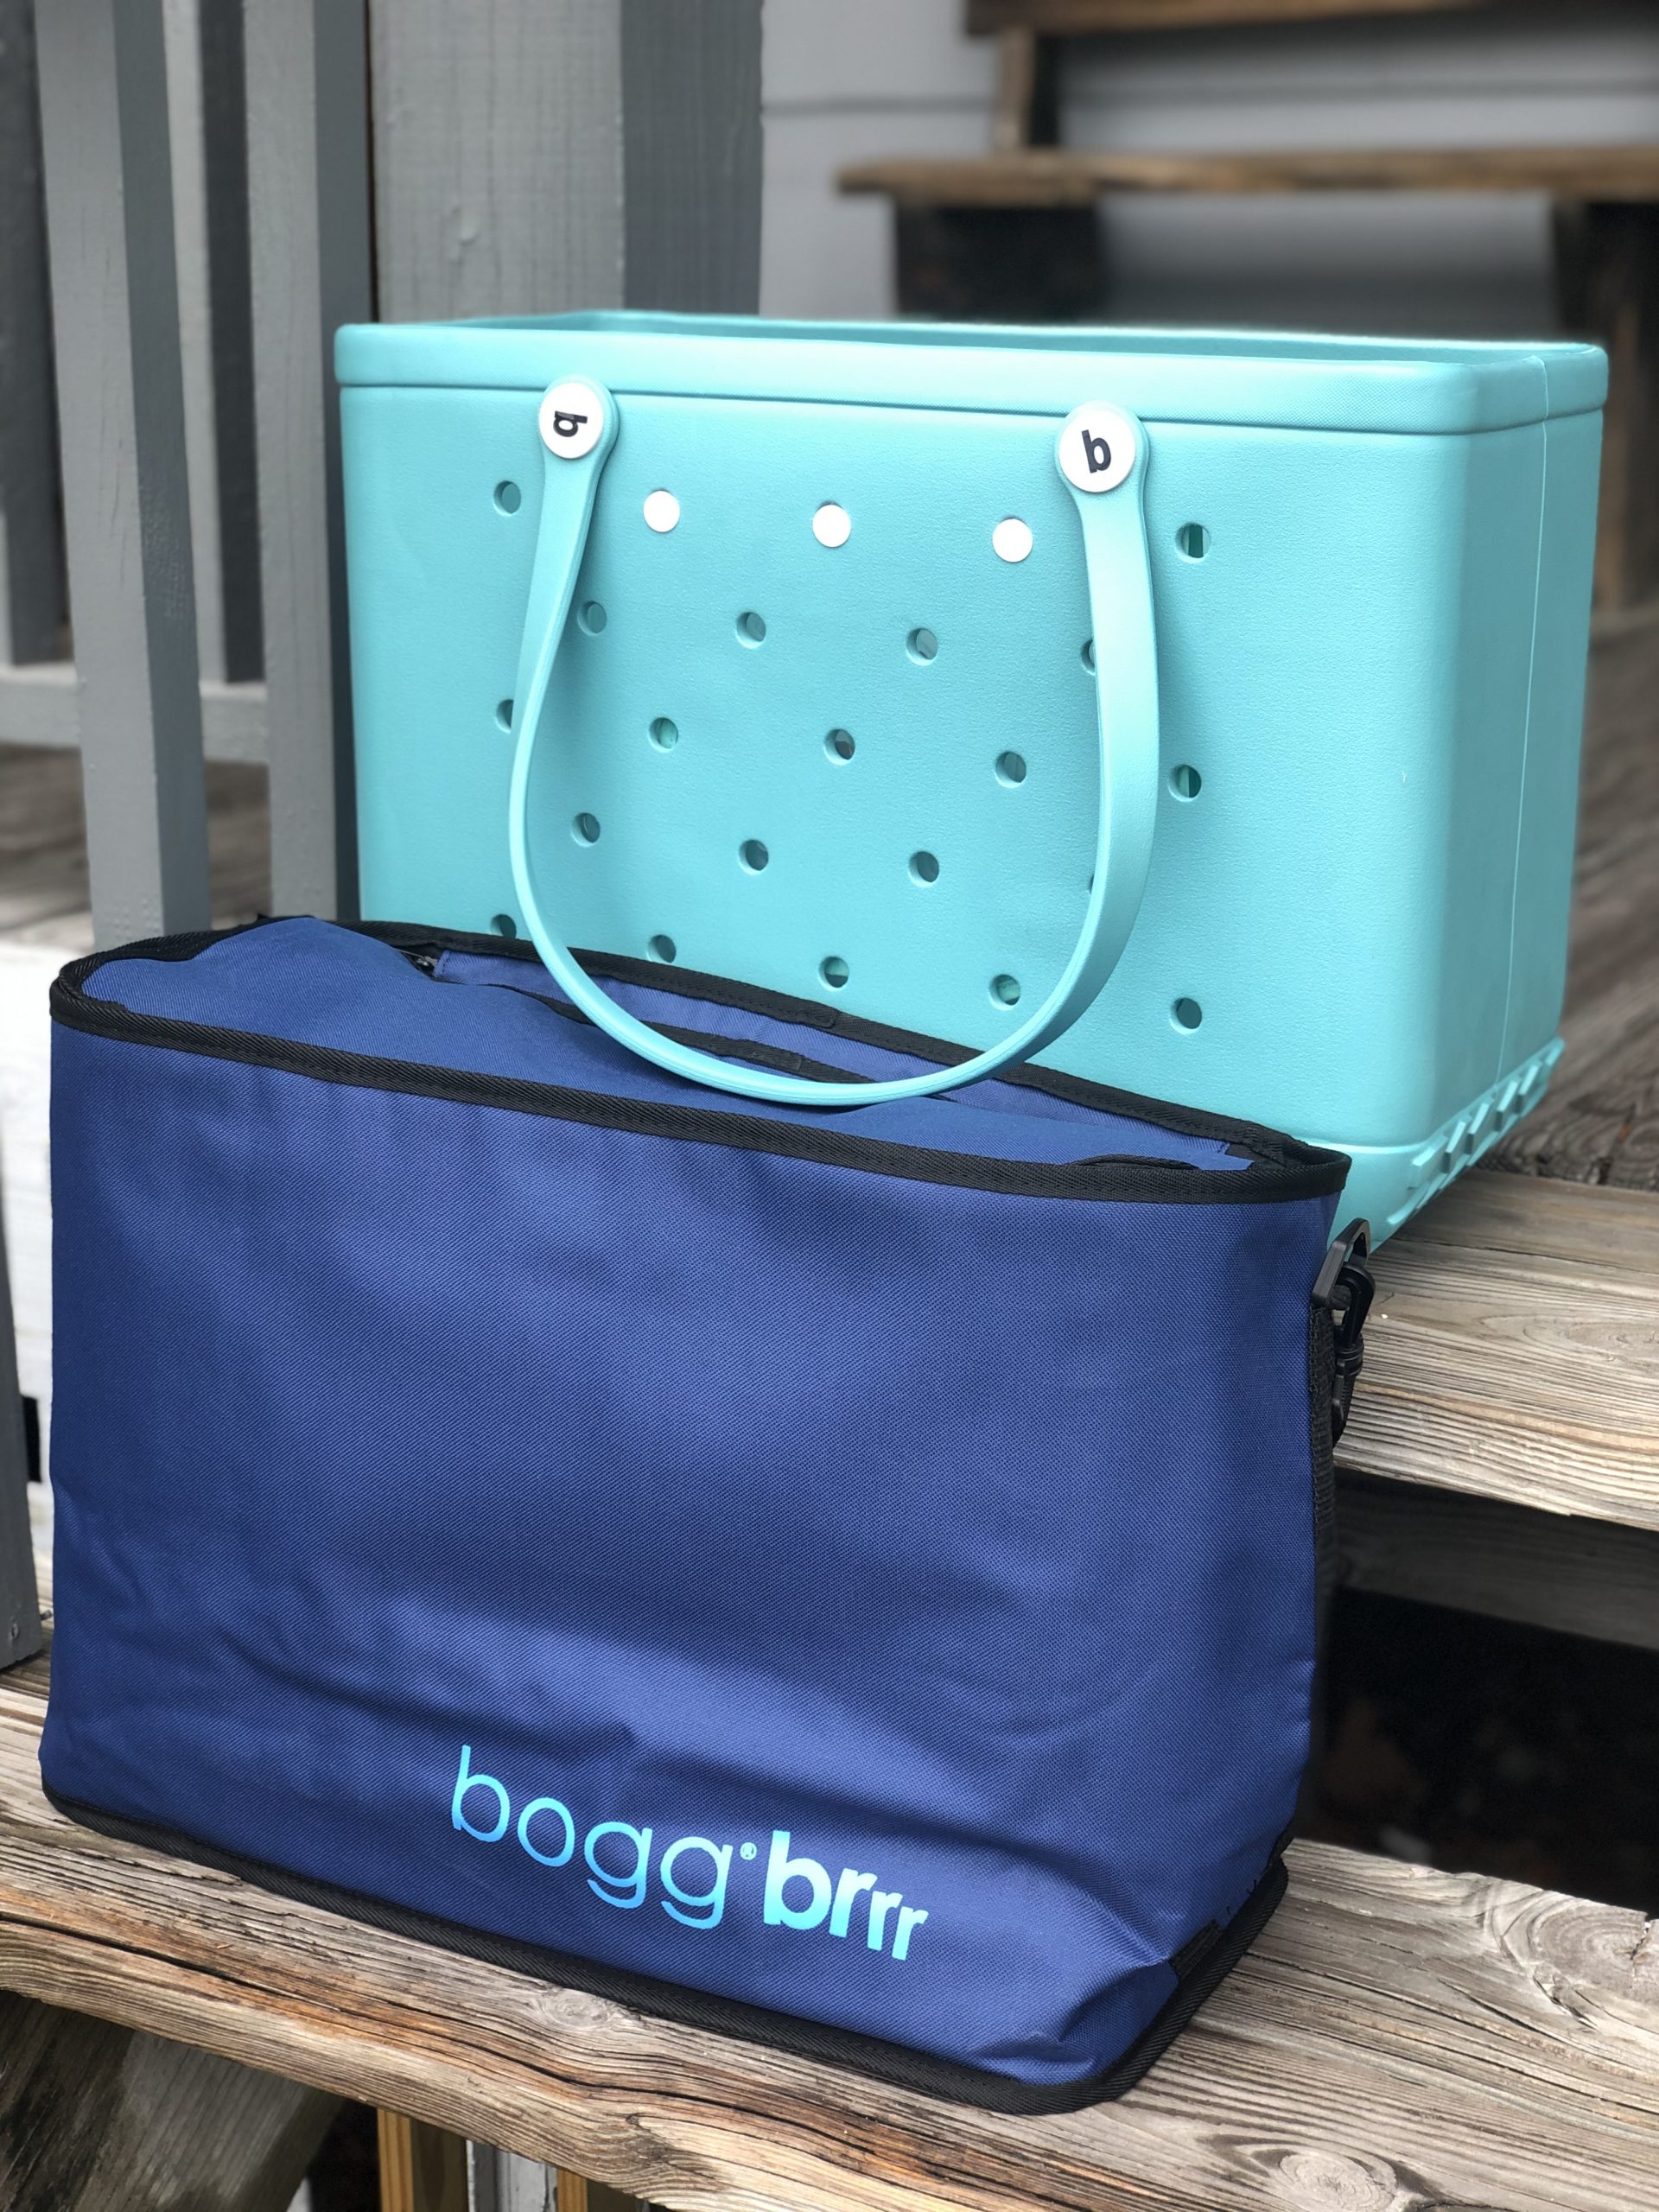 Bogg® Brrr - Cooler Inserts – BOGG BAG